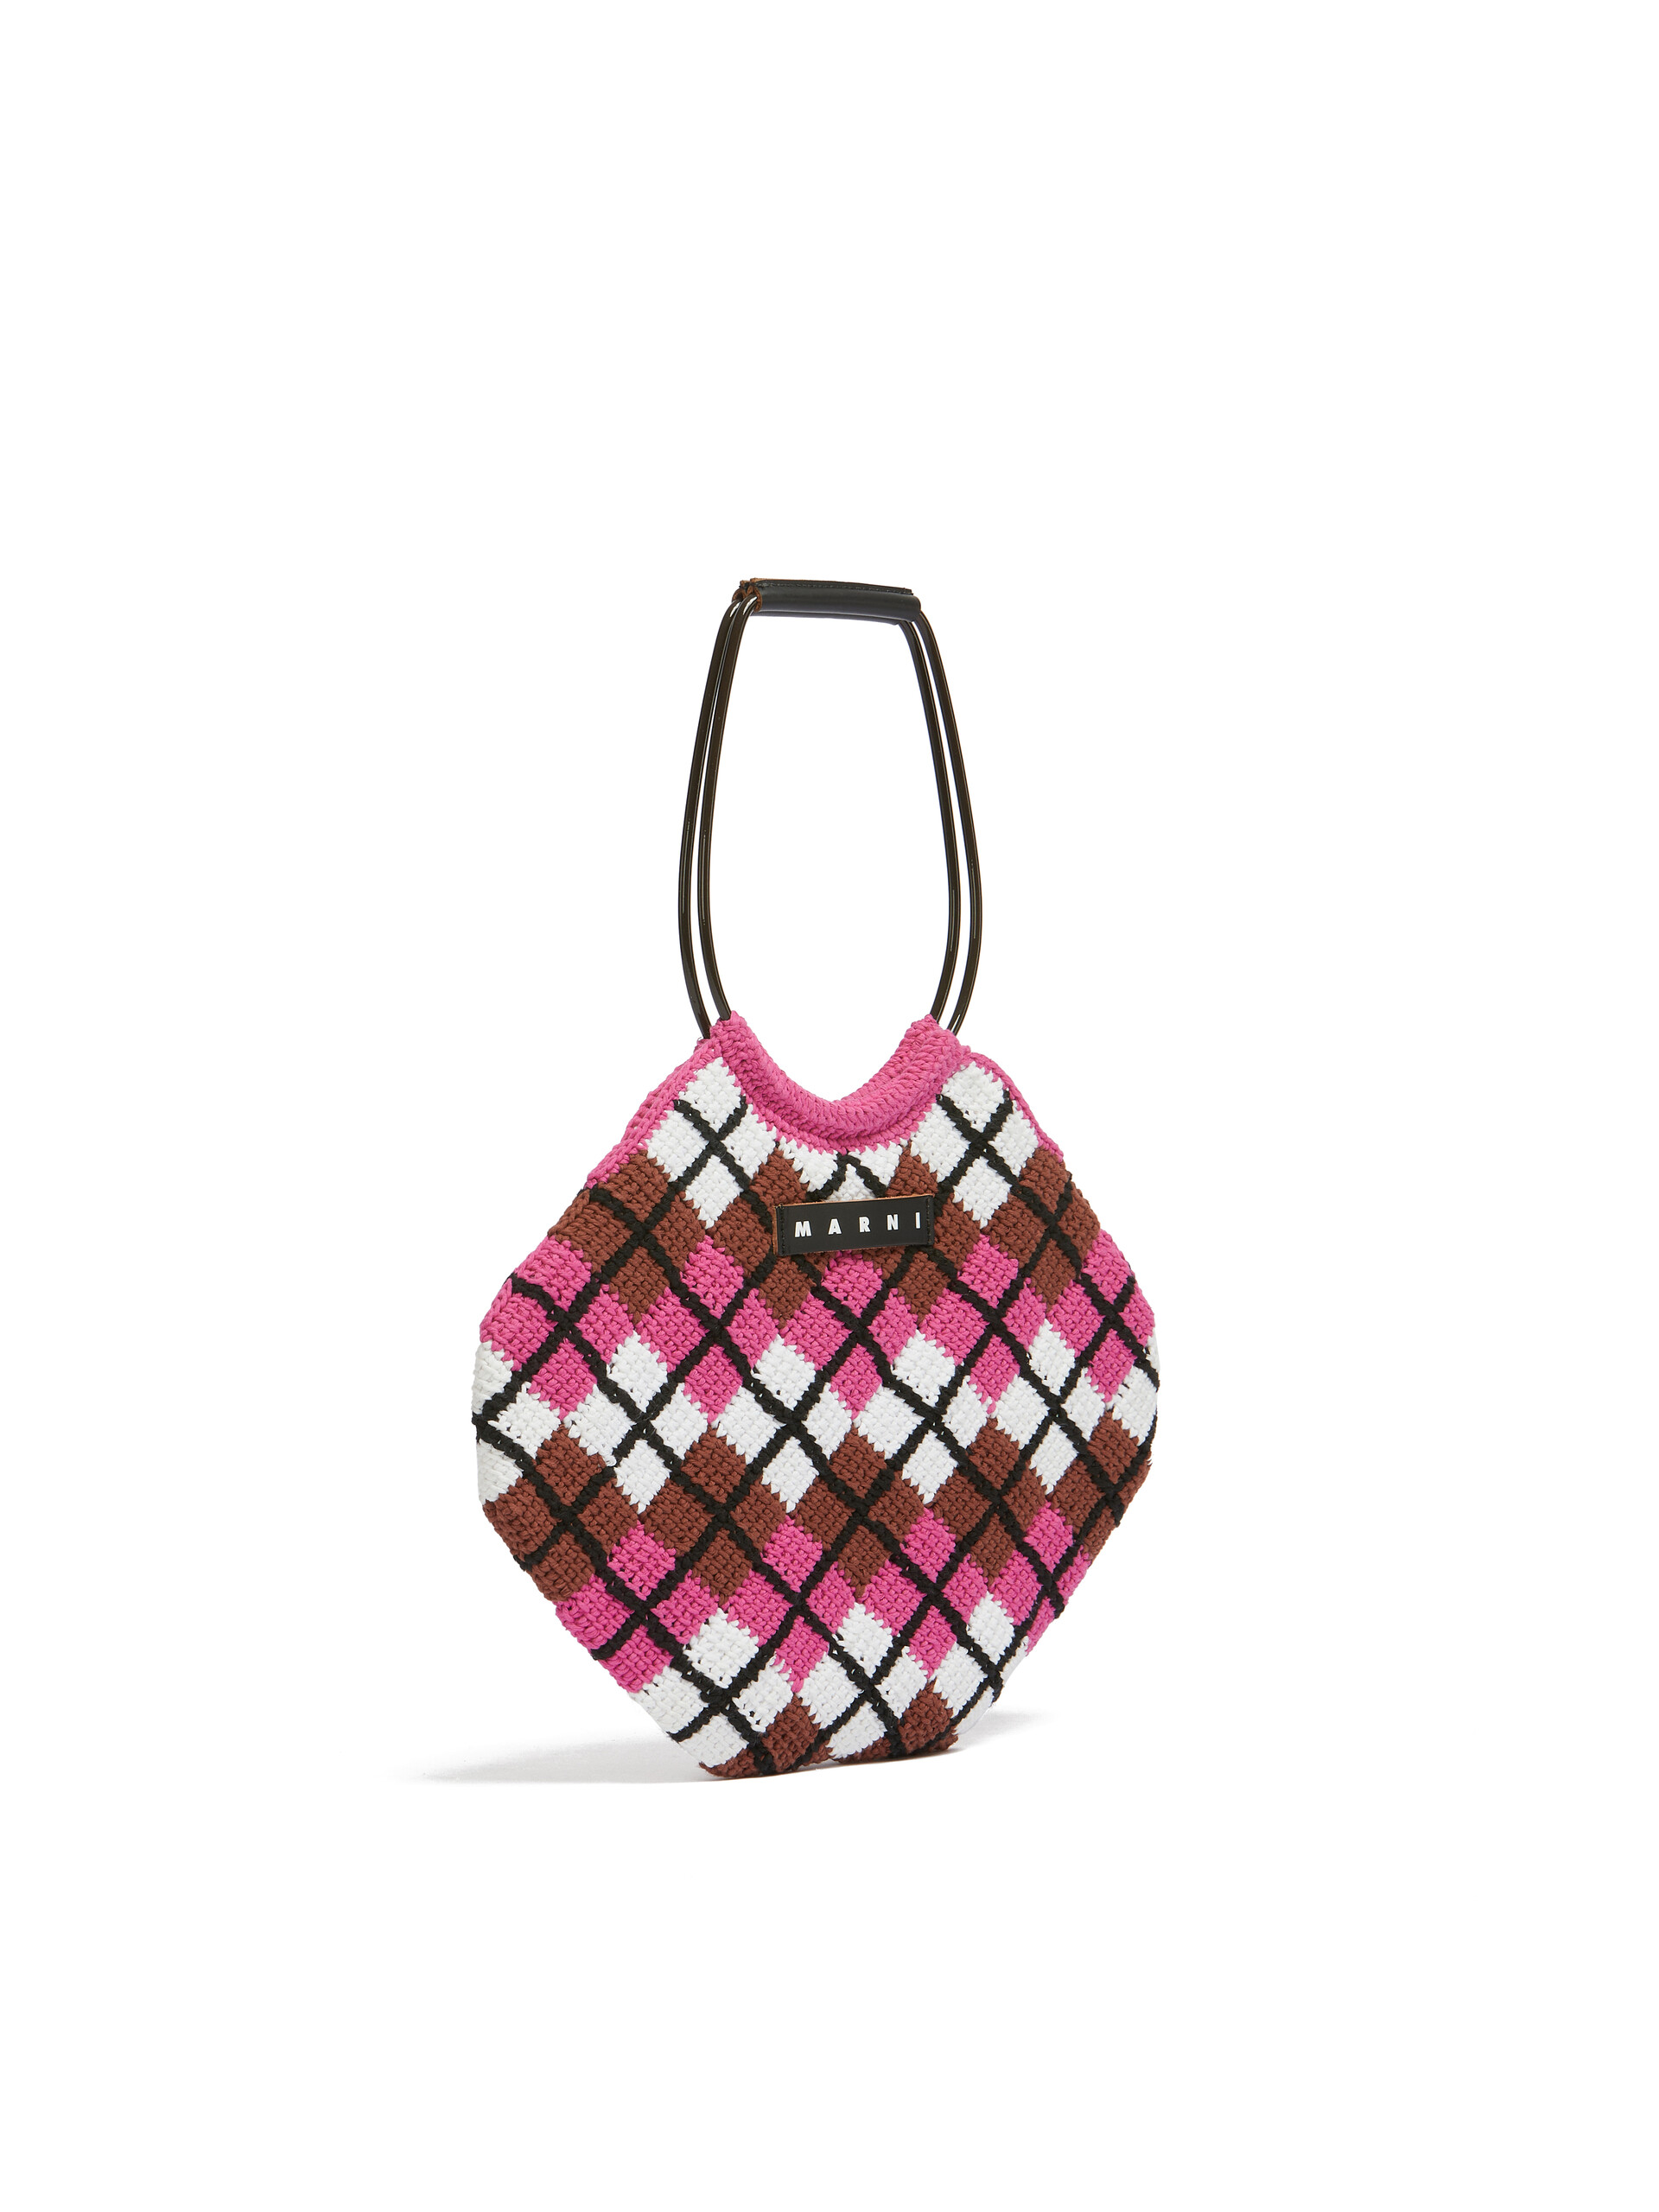 MARNI MARKET Handtasche mit Rautenmuster aus Baumwolle in Rosa - Shopper - Image 2